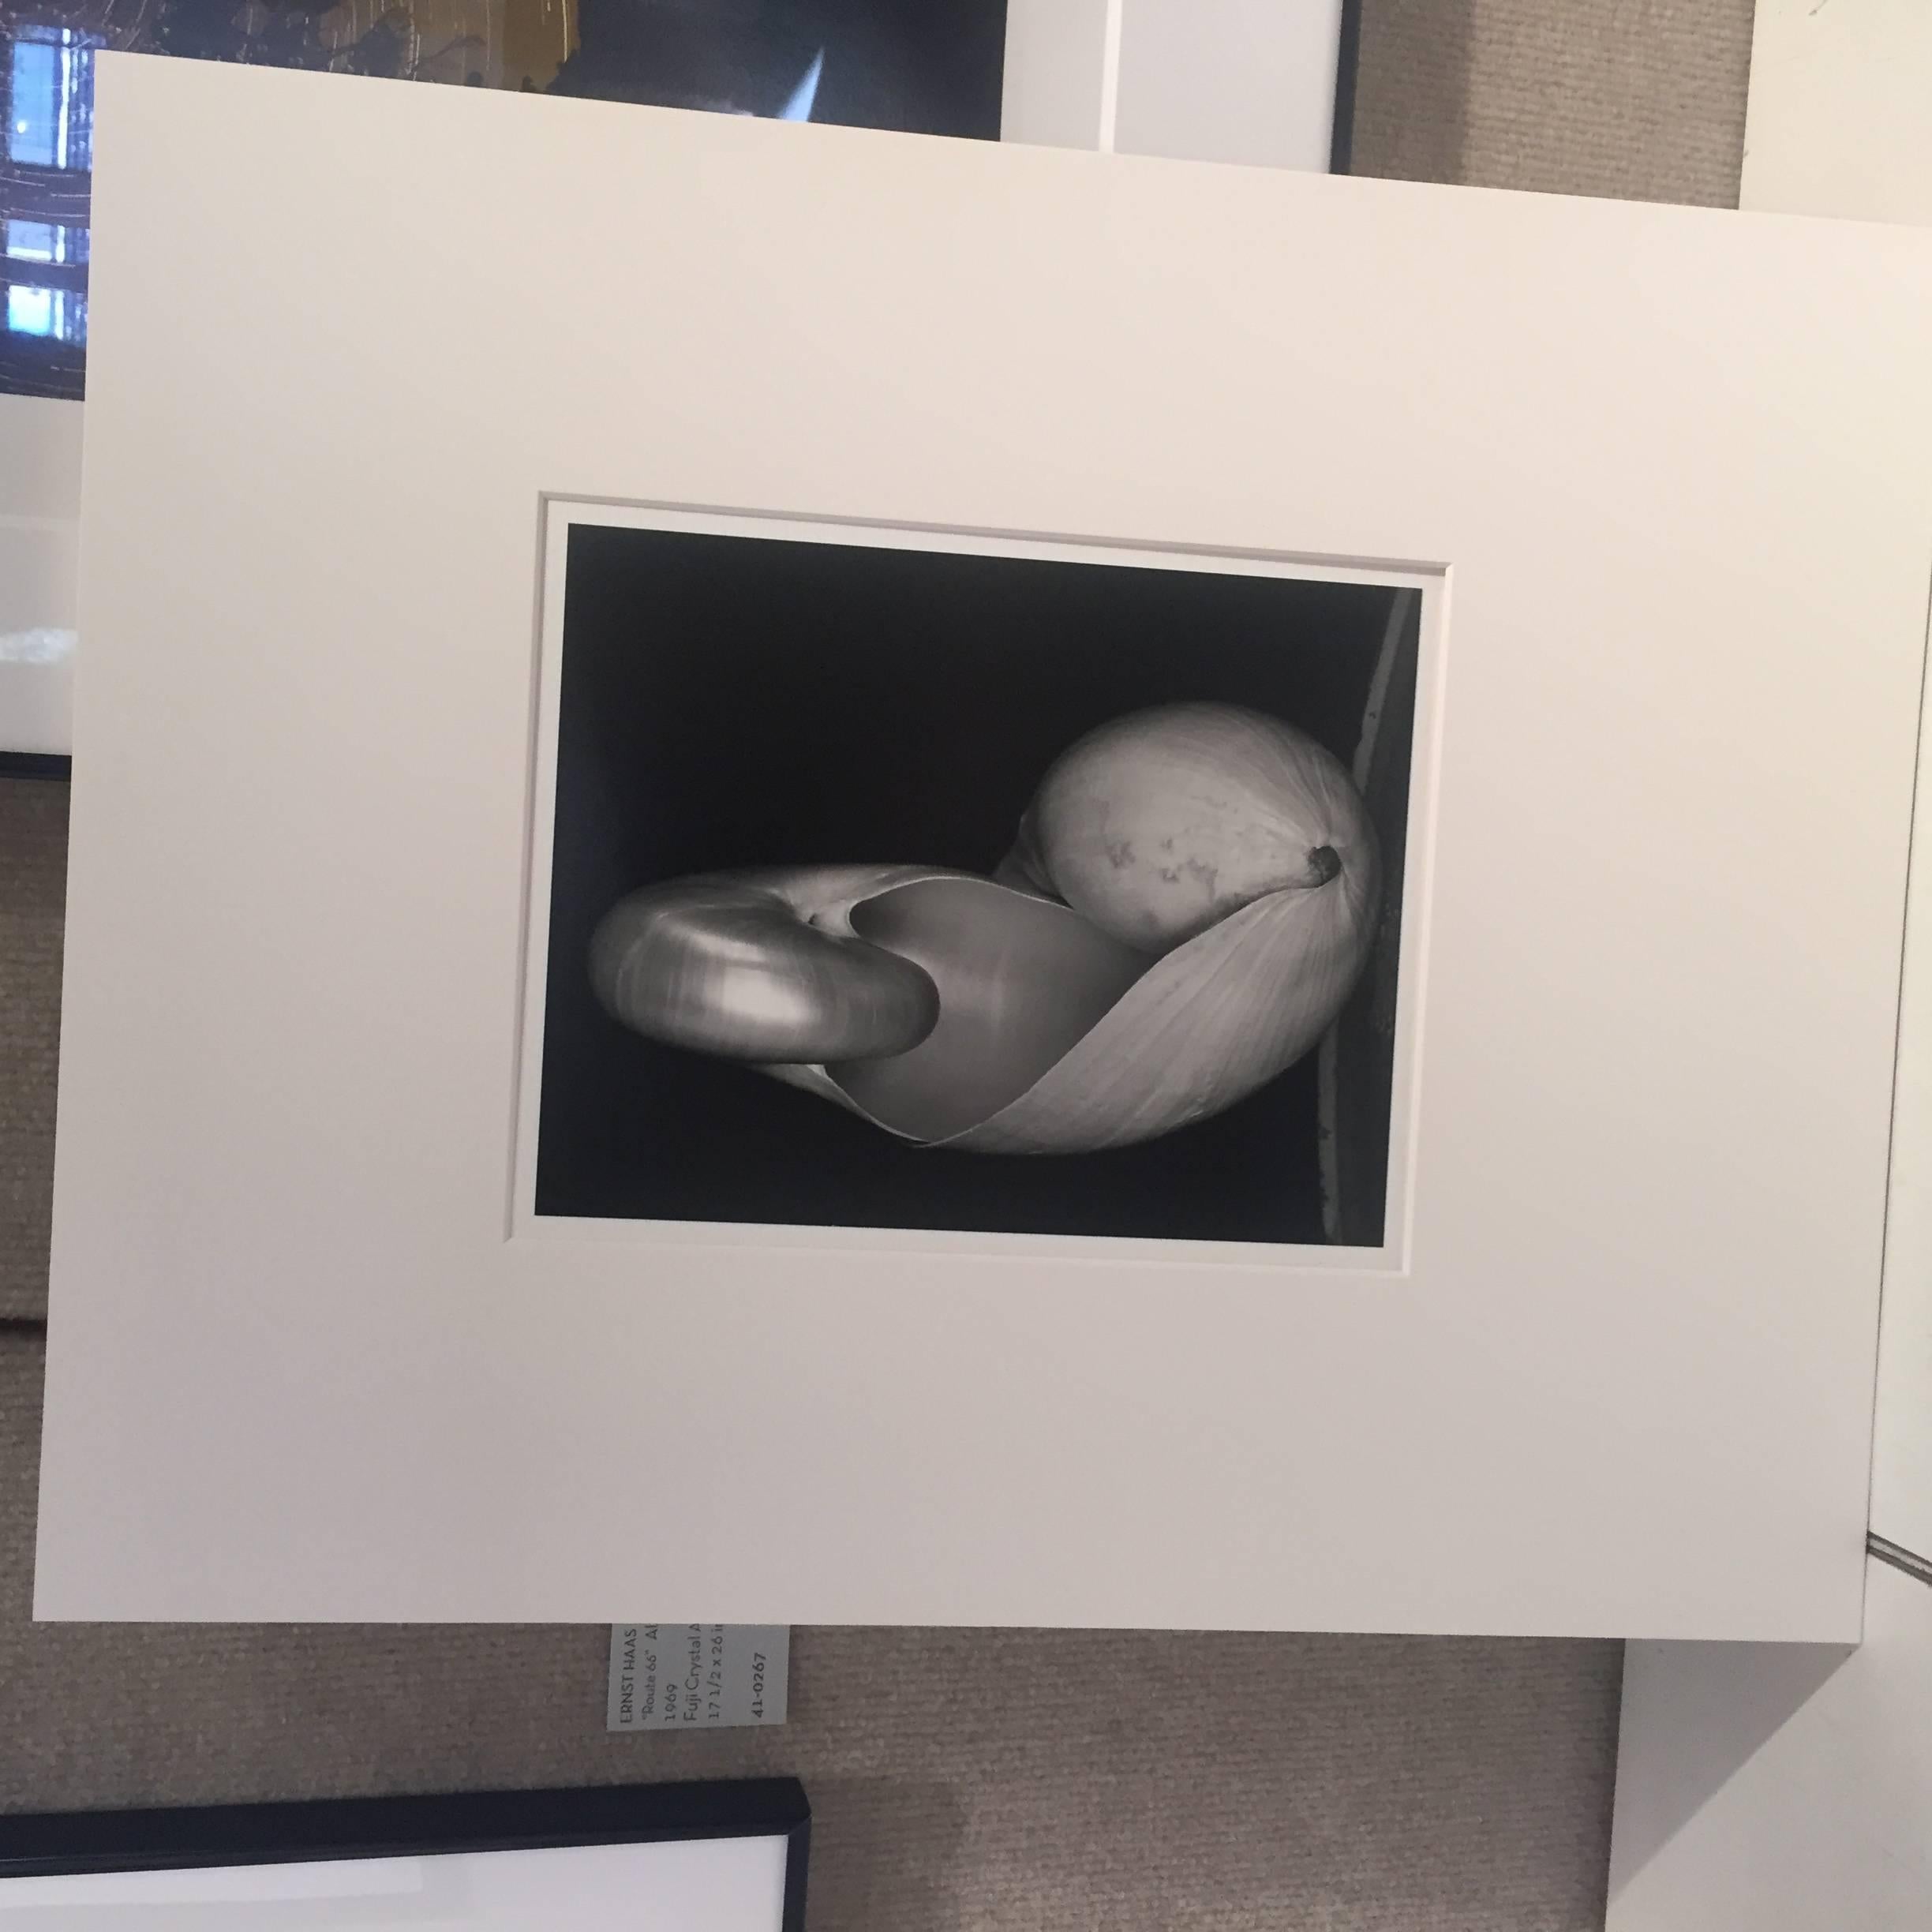 14S ~ Zwei Muscheln (Schwarz), Still-Life Photograph, von Edward Weston